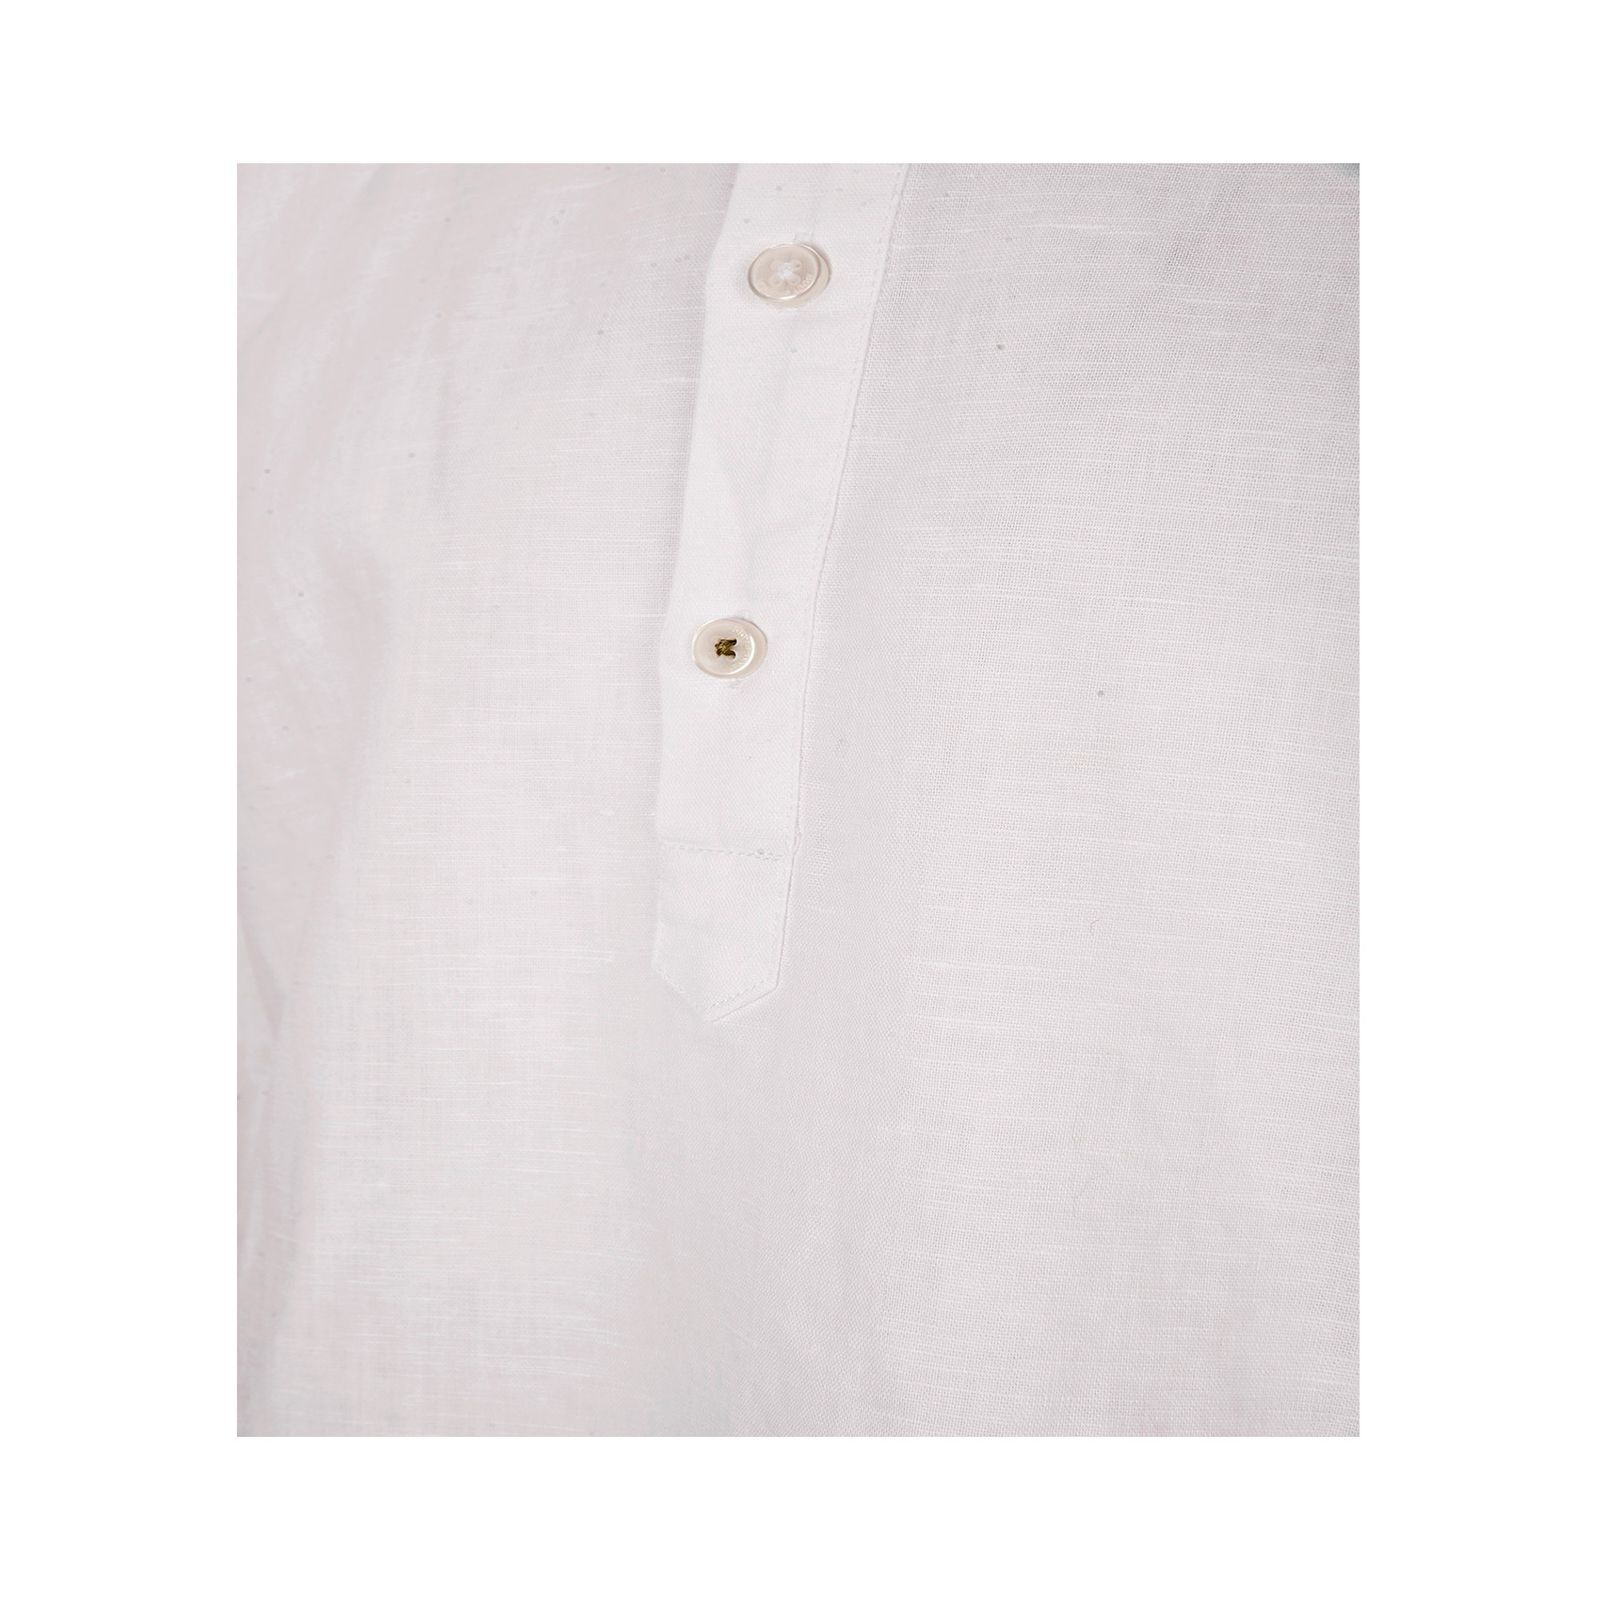 پیراهن آستین بلند مردانه بادی اسپینر مدل 4195 کد 2 رنگ سفید -  - 4